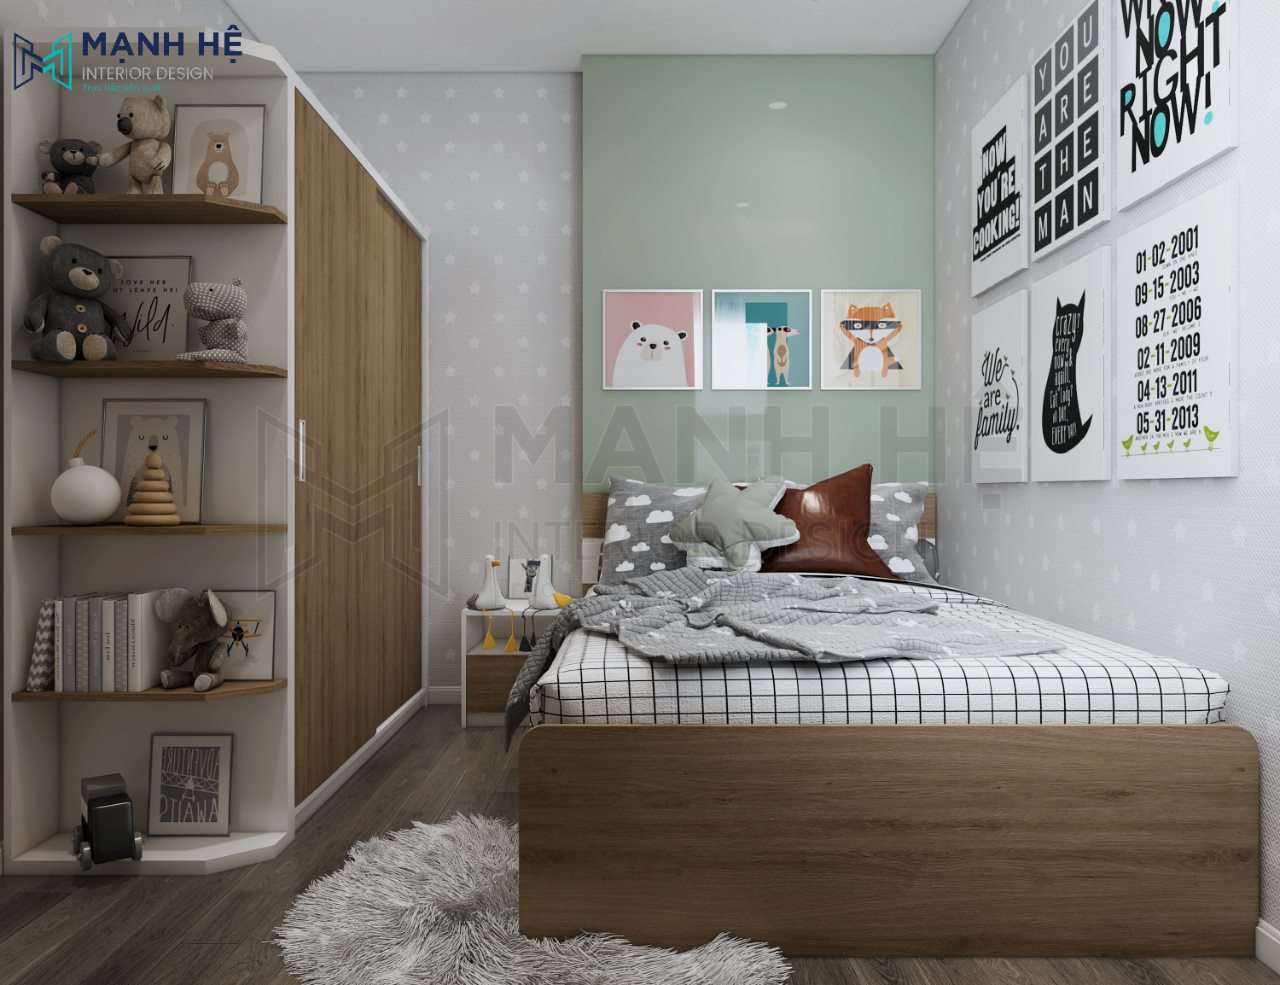 Sơn tường màu xanh lá làm điểm nhấn sáng tạo cho phòng ngủ bé